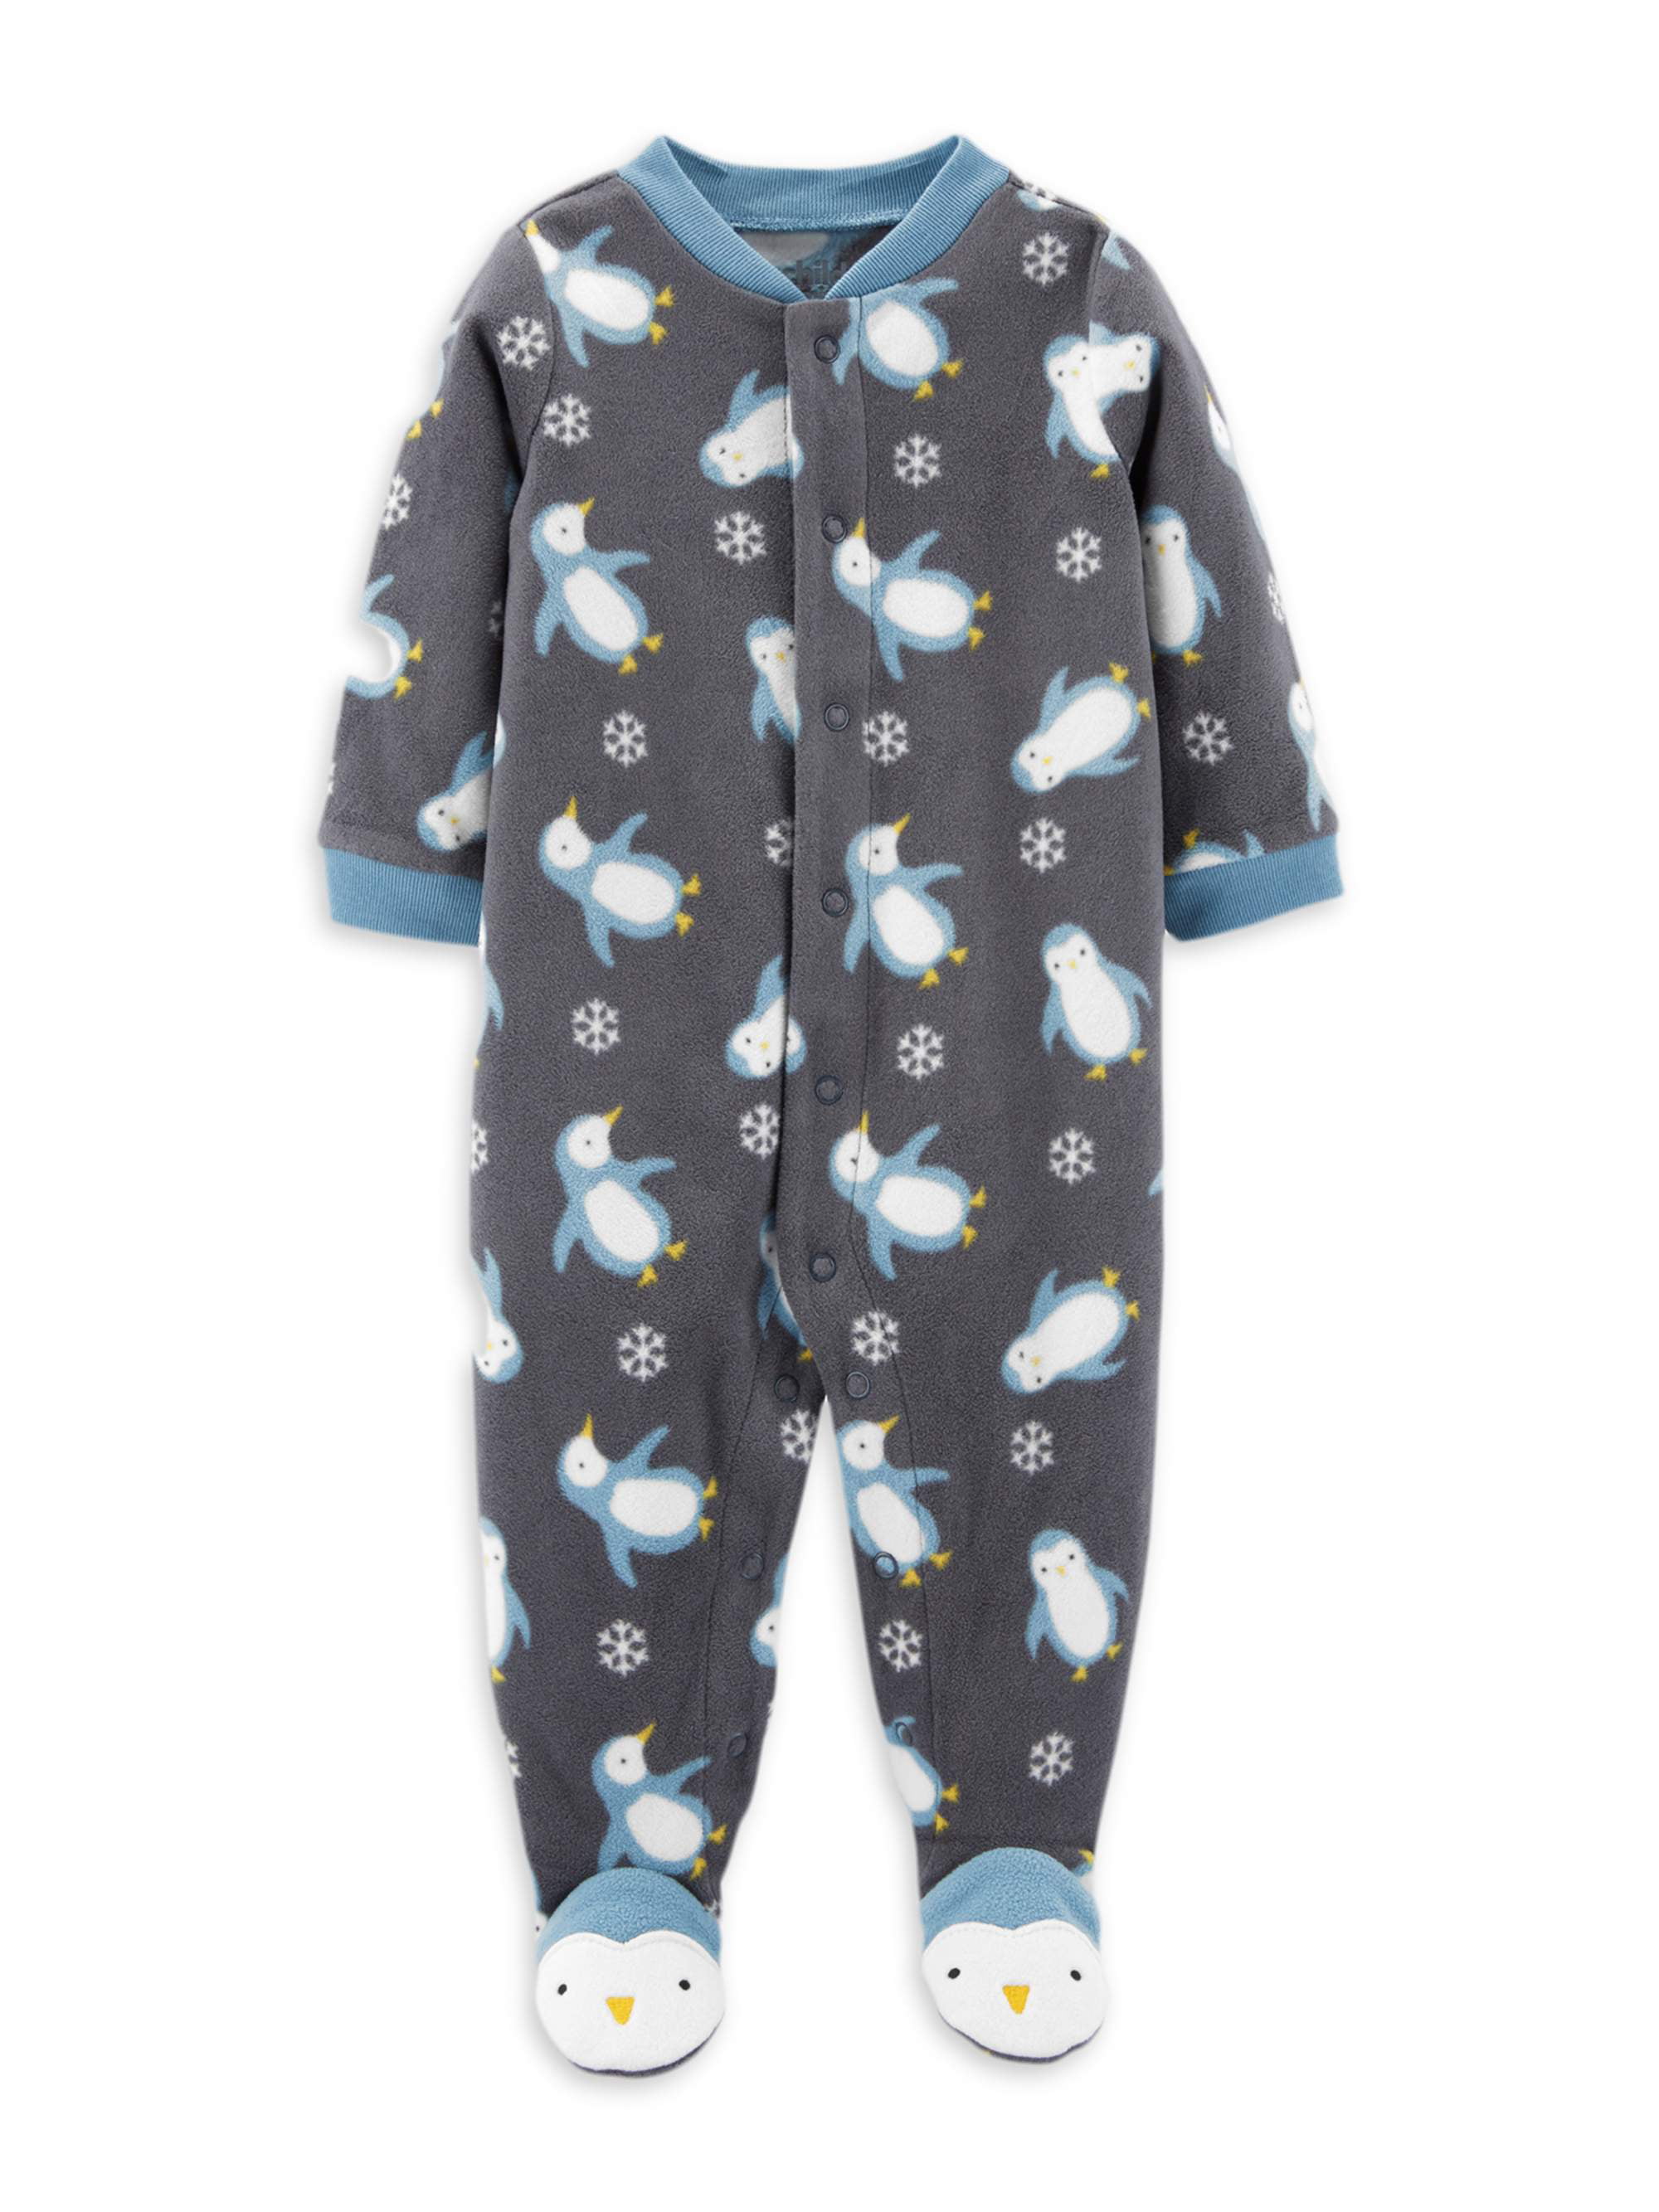 Carters Baby Boy 3 6 Months Fleece Sleep & Play Footie Penguin Clothes 